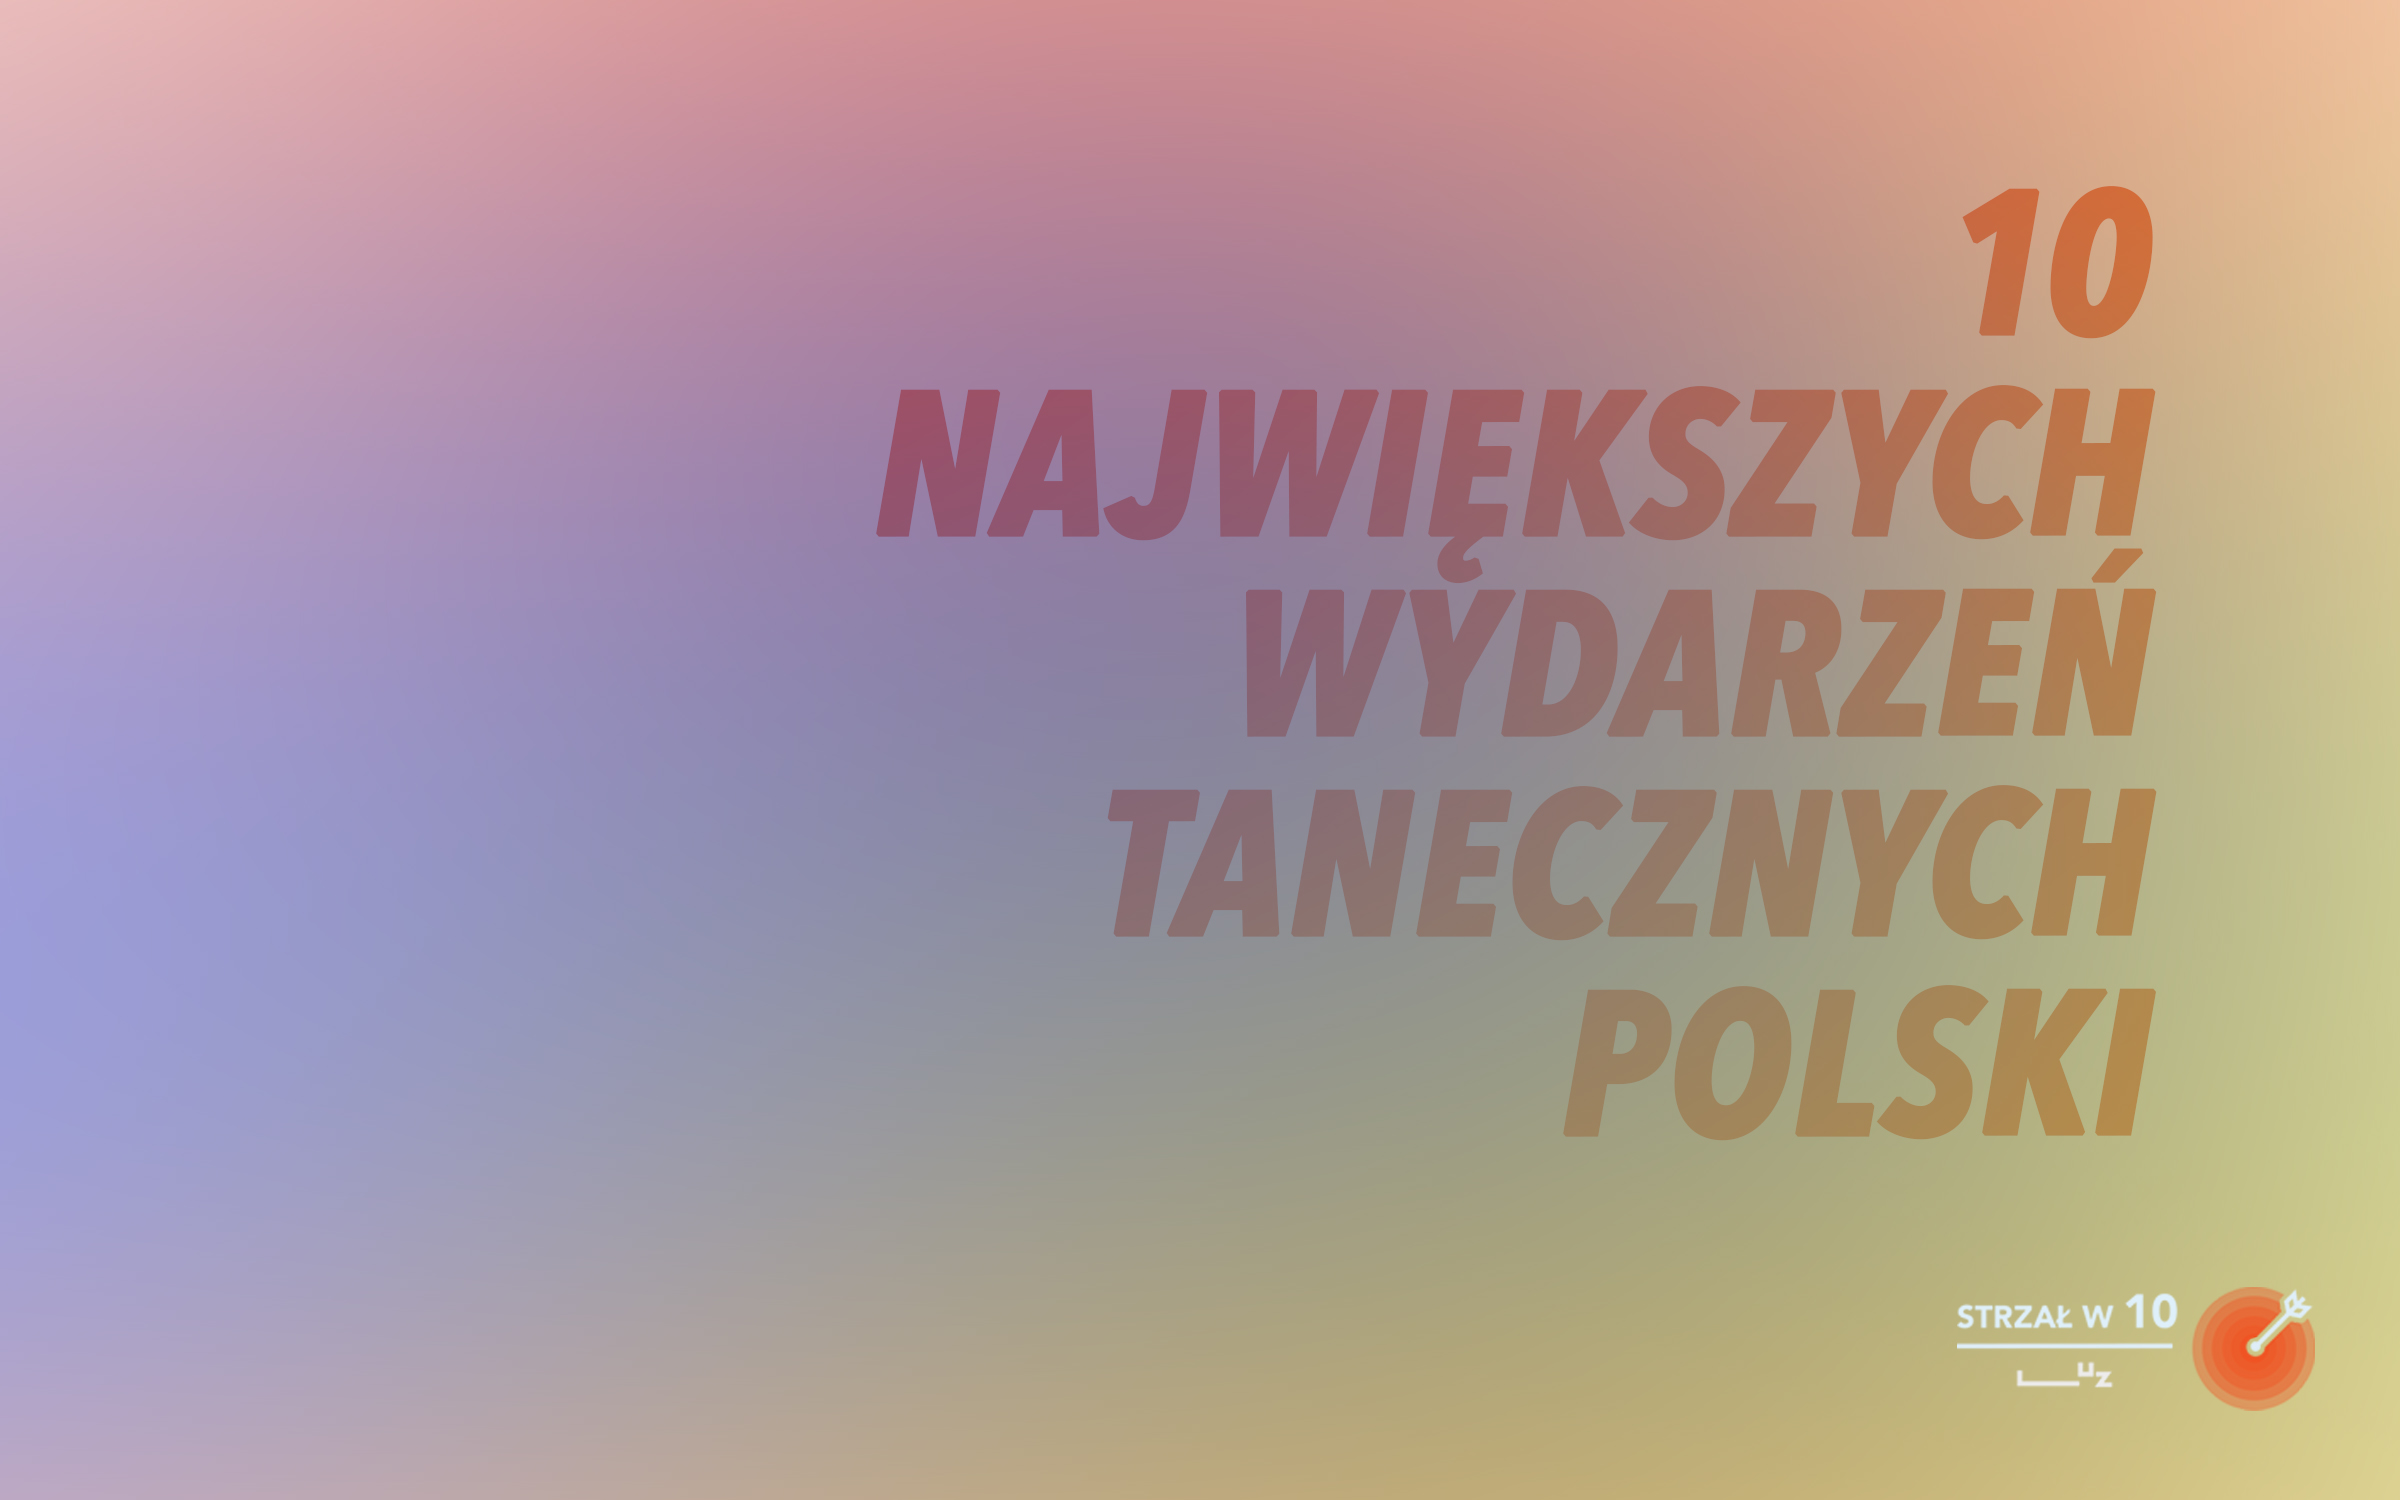 10 najważniejszych wydarzeń tanecznych w Polsce – STRZAŁ w 10.